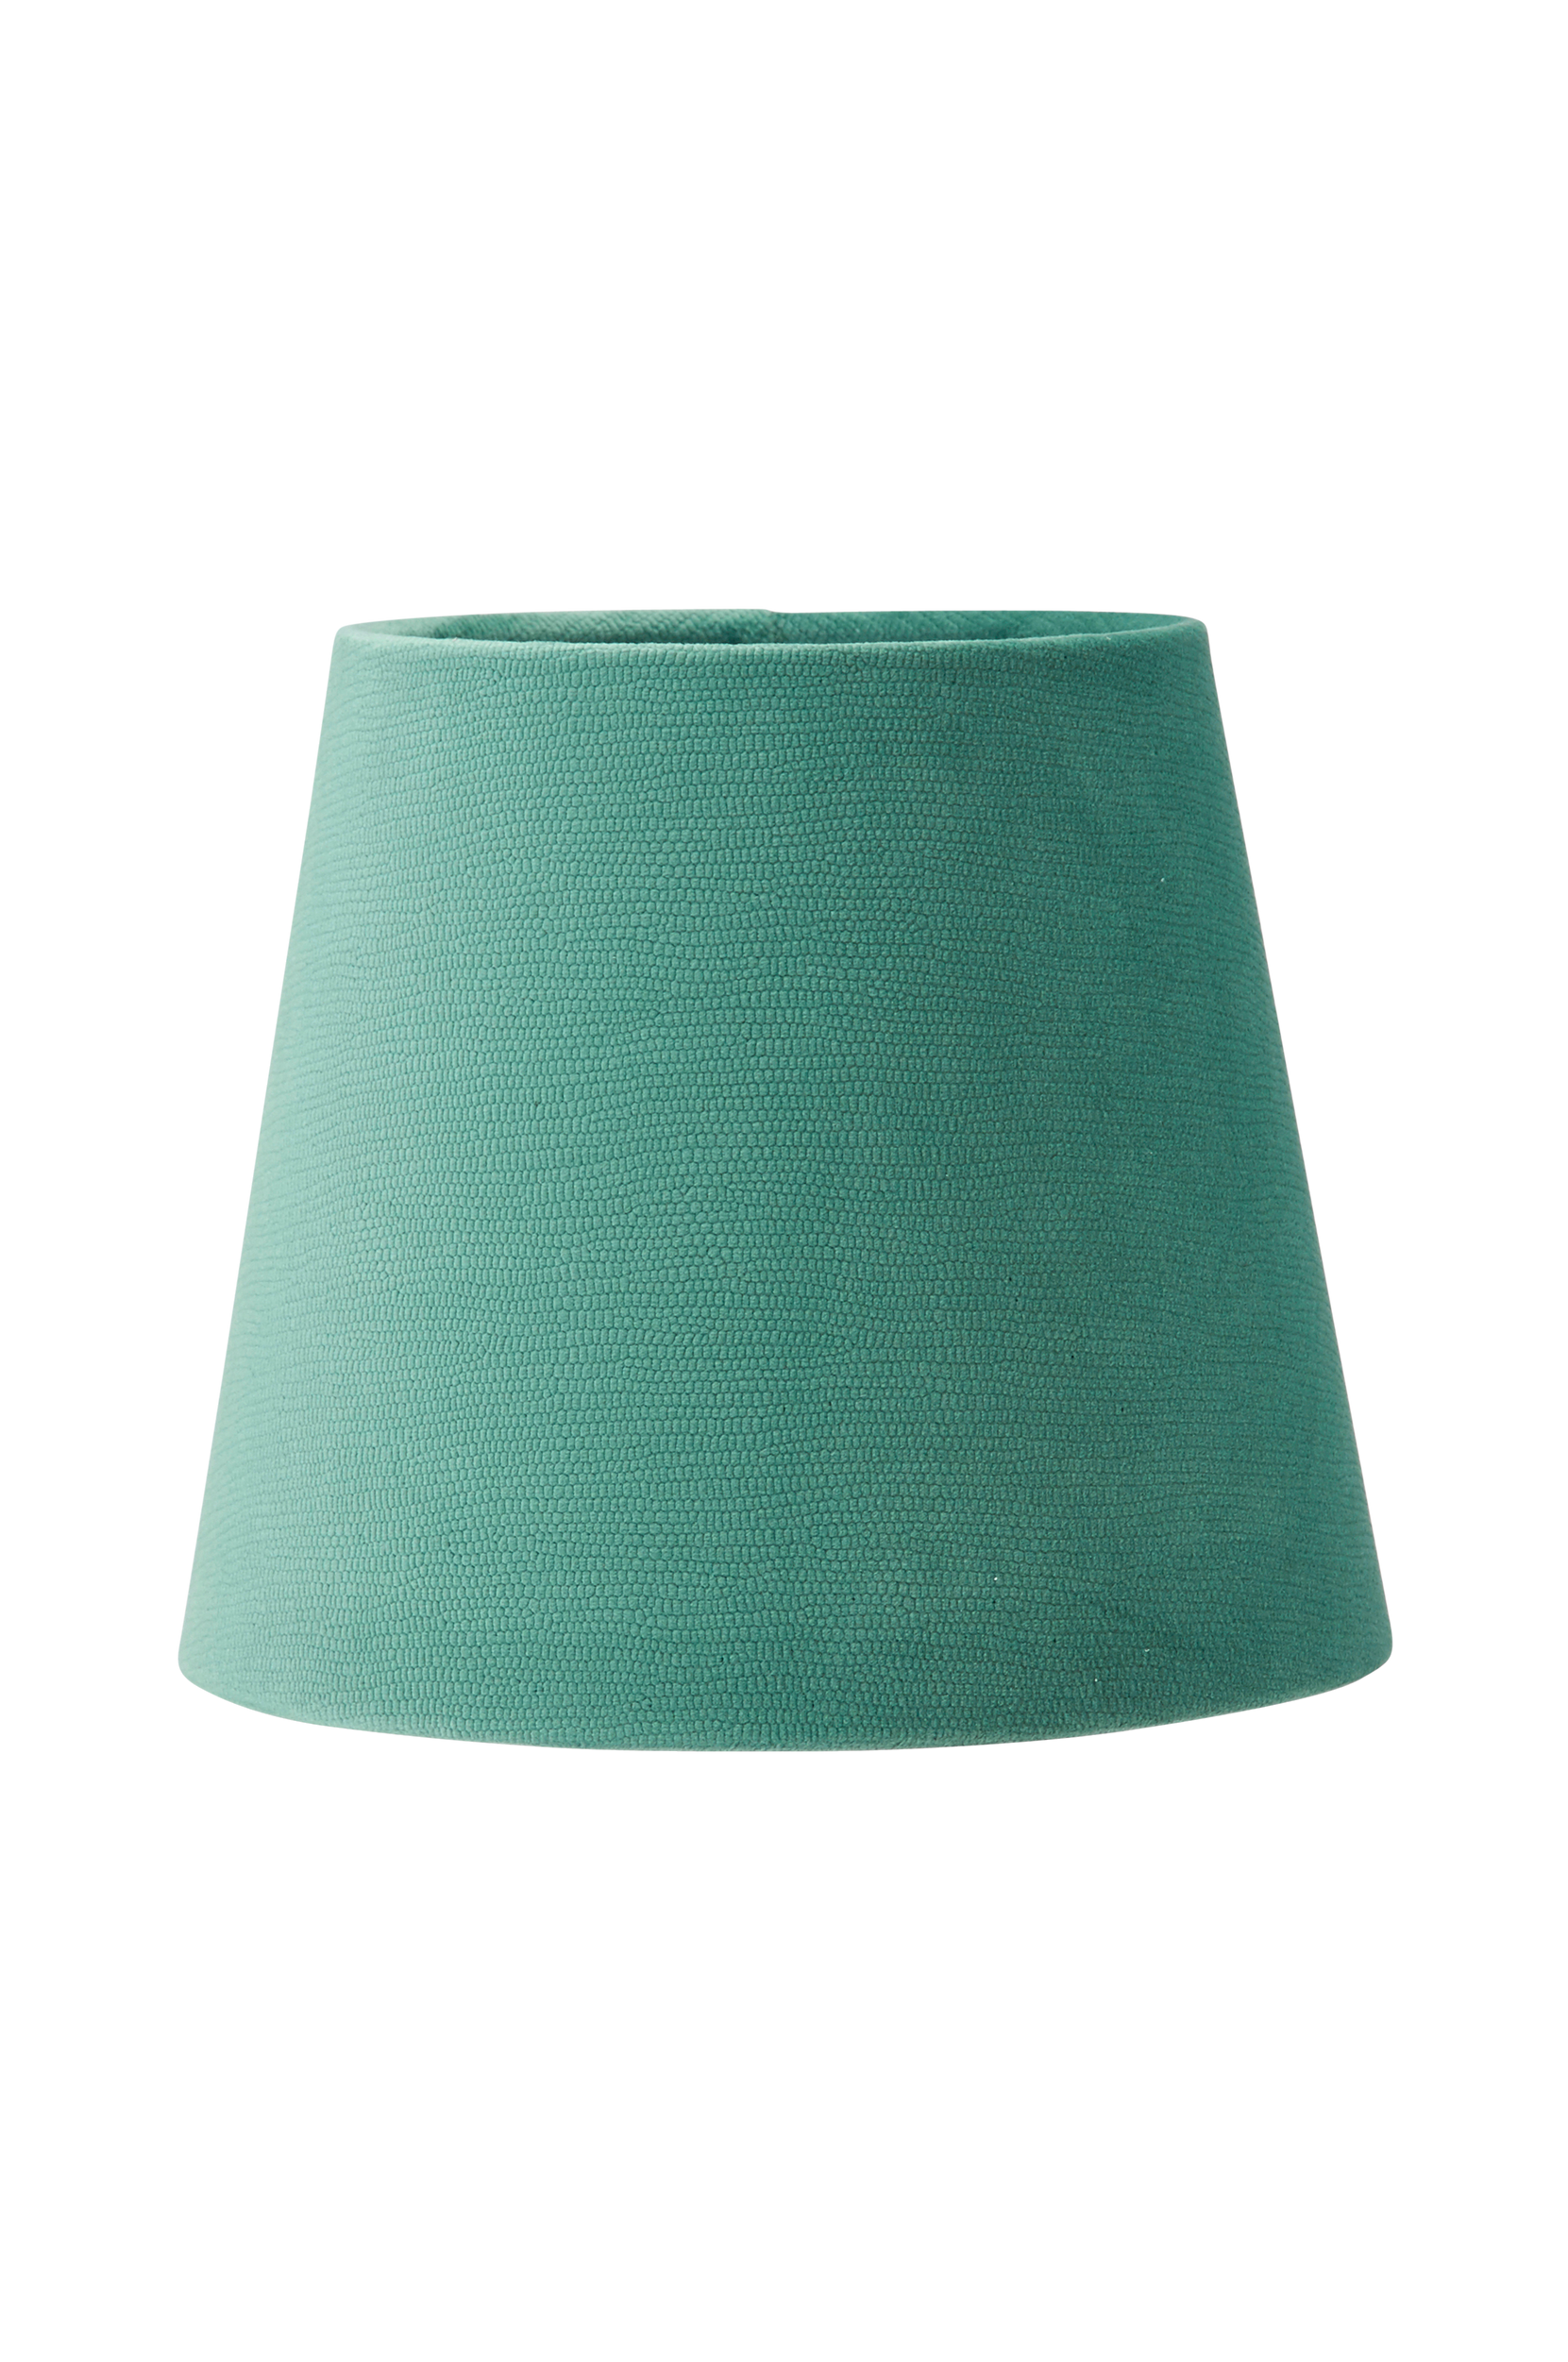 PR Home - Lampskärm Mia i sammet, 17 cm - Grön